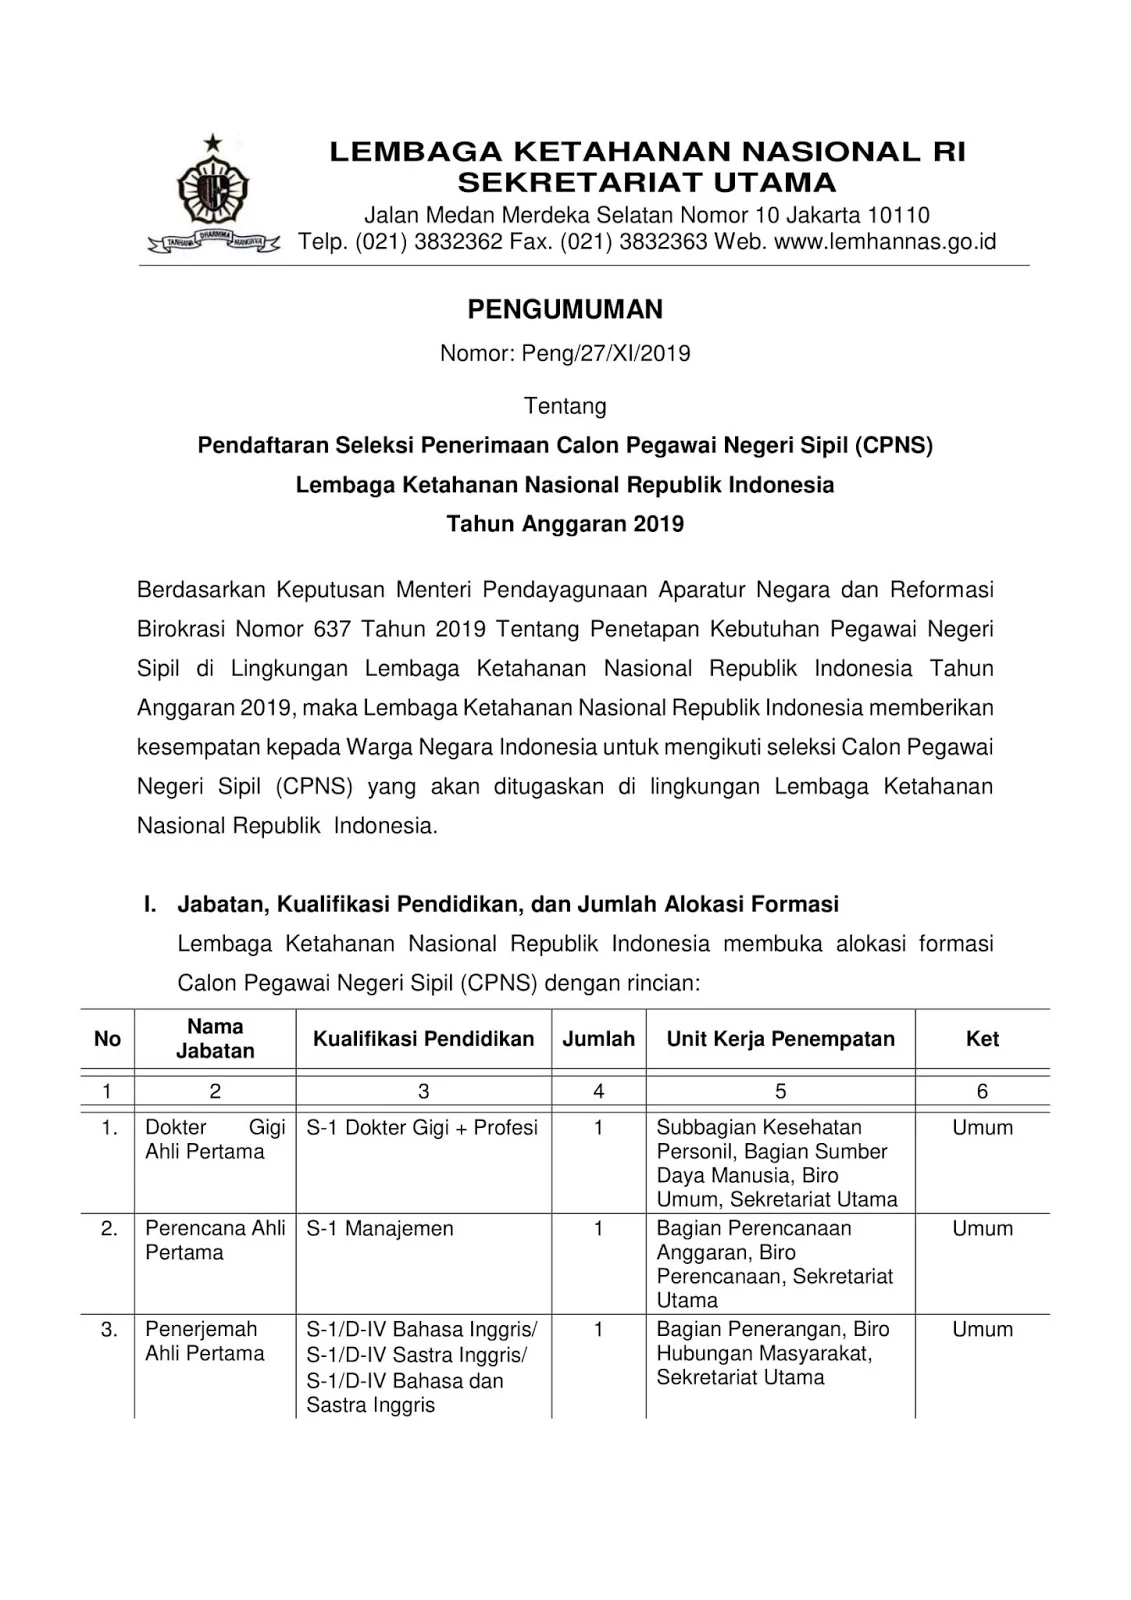 Lowongan CPNS Lembaga Ketahanan Nasional Republik Indonesia Tahun Anggaran 2019 [42 Formasi]